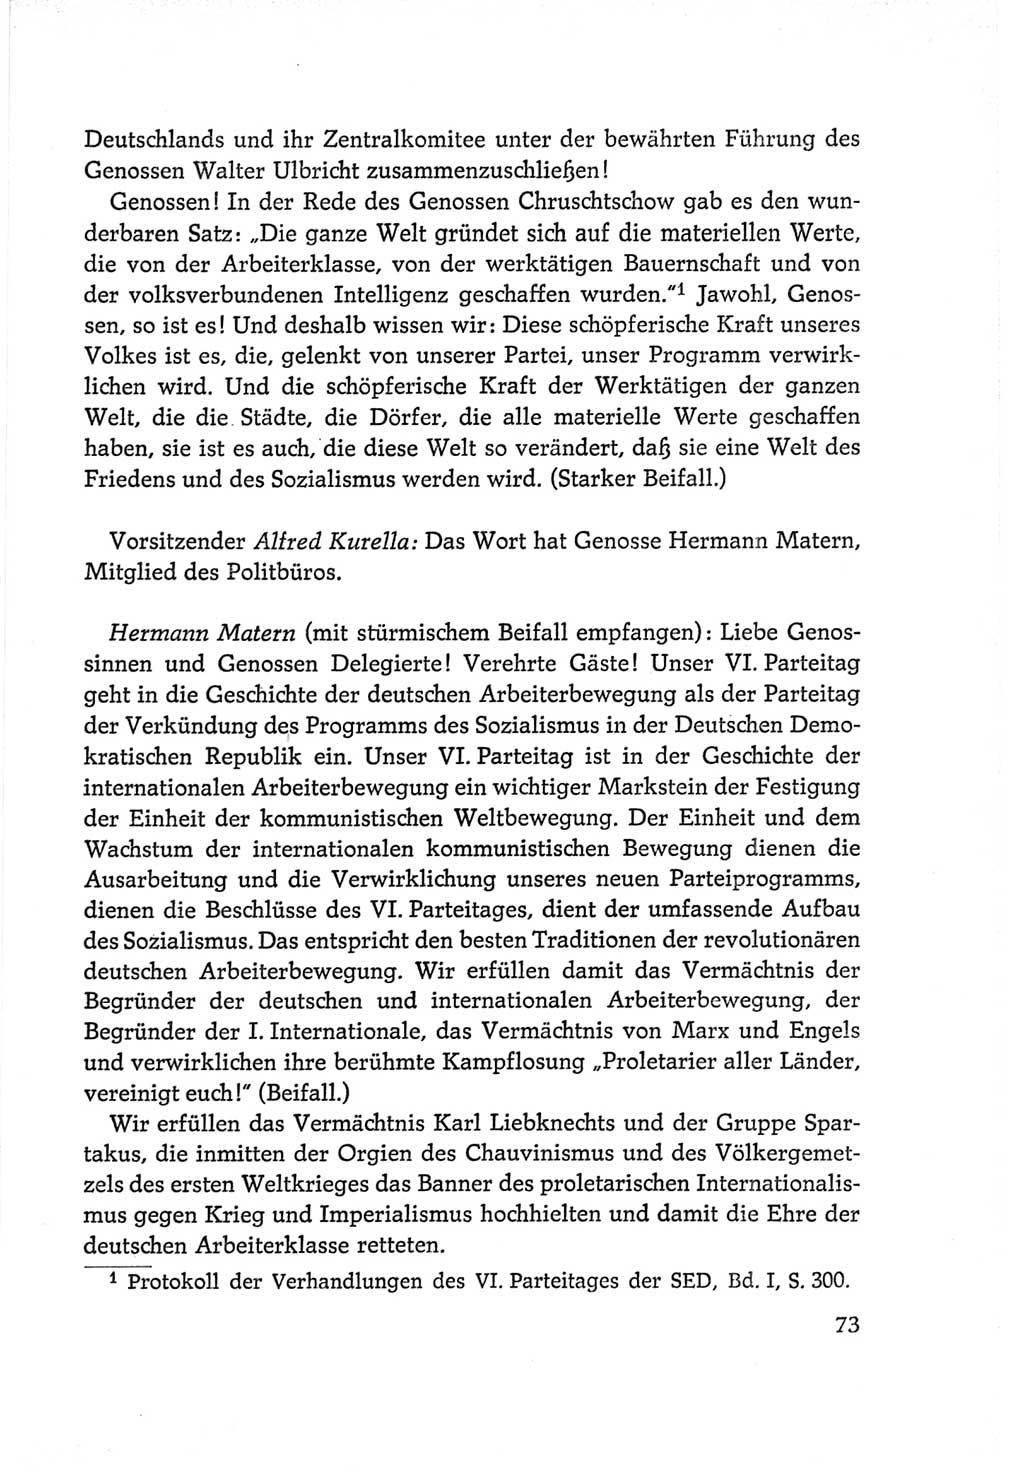 Protokoll der Verhandlungen des Ⅵ. Parteitages der Sozialistischen Einheitspartei Deutschlands (SED) [Deutsche Demokratische Republik (DDR)] 1963, Band Ⅱ, Seite 73 (Prot. Verh. Ⅵ. PT SED DDR 1963, Bd. Ⅱ, S. 73)